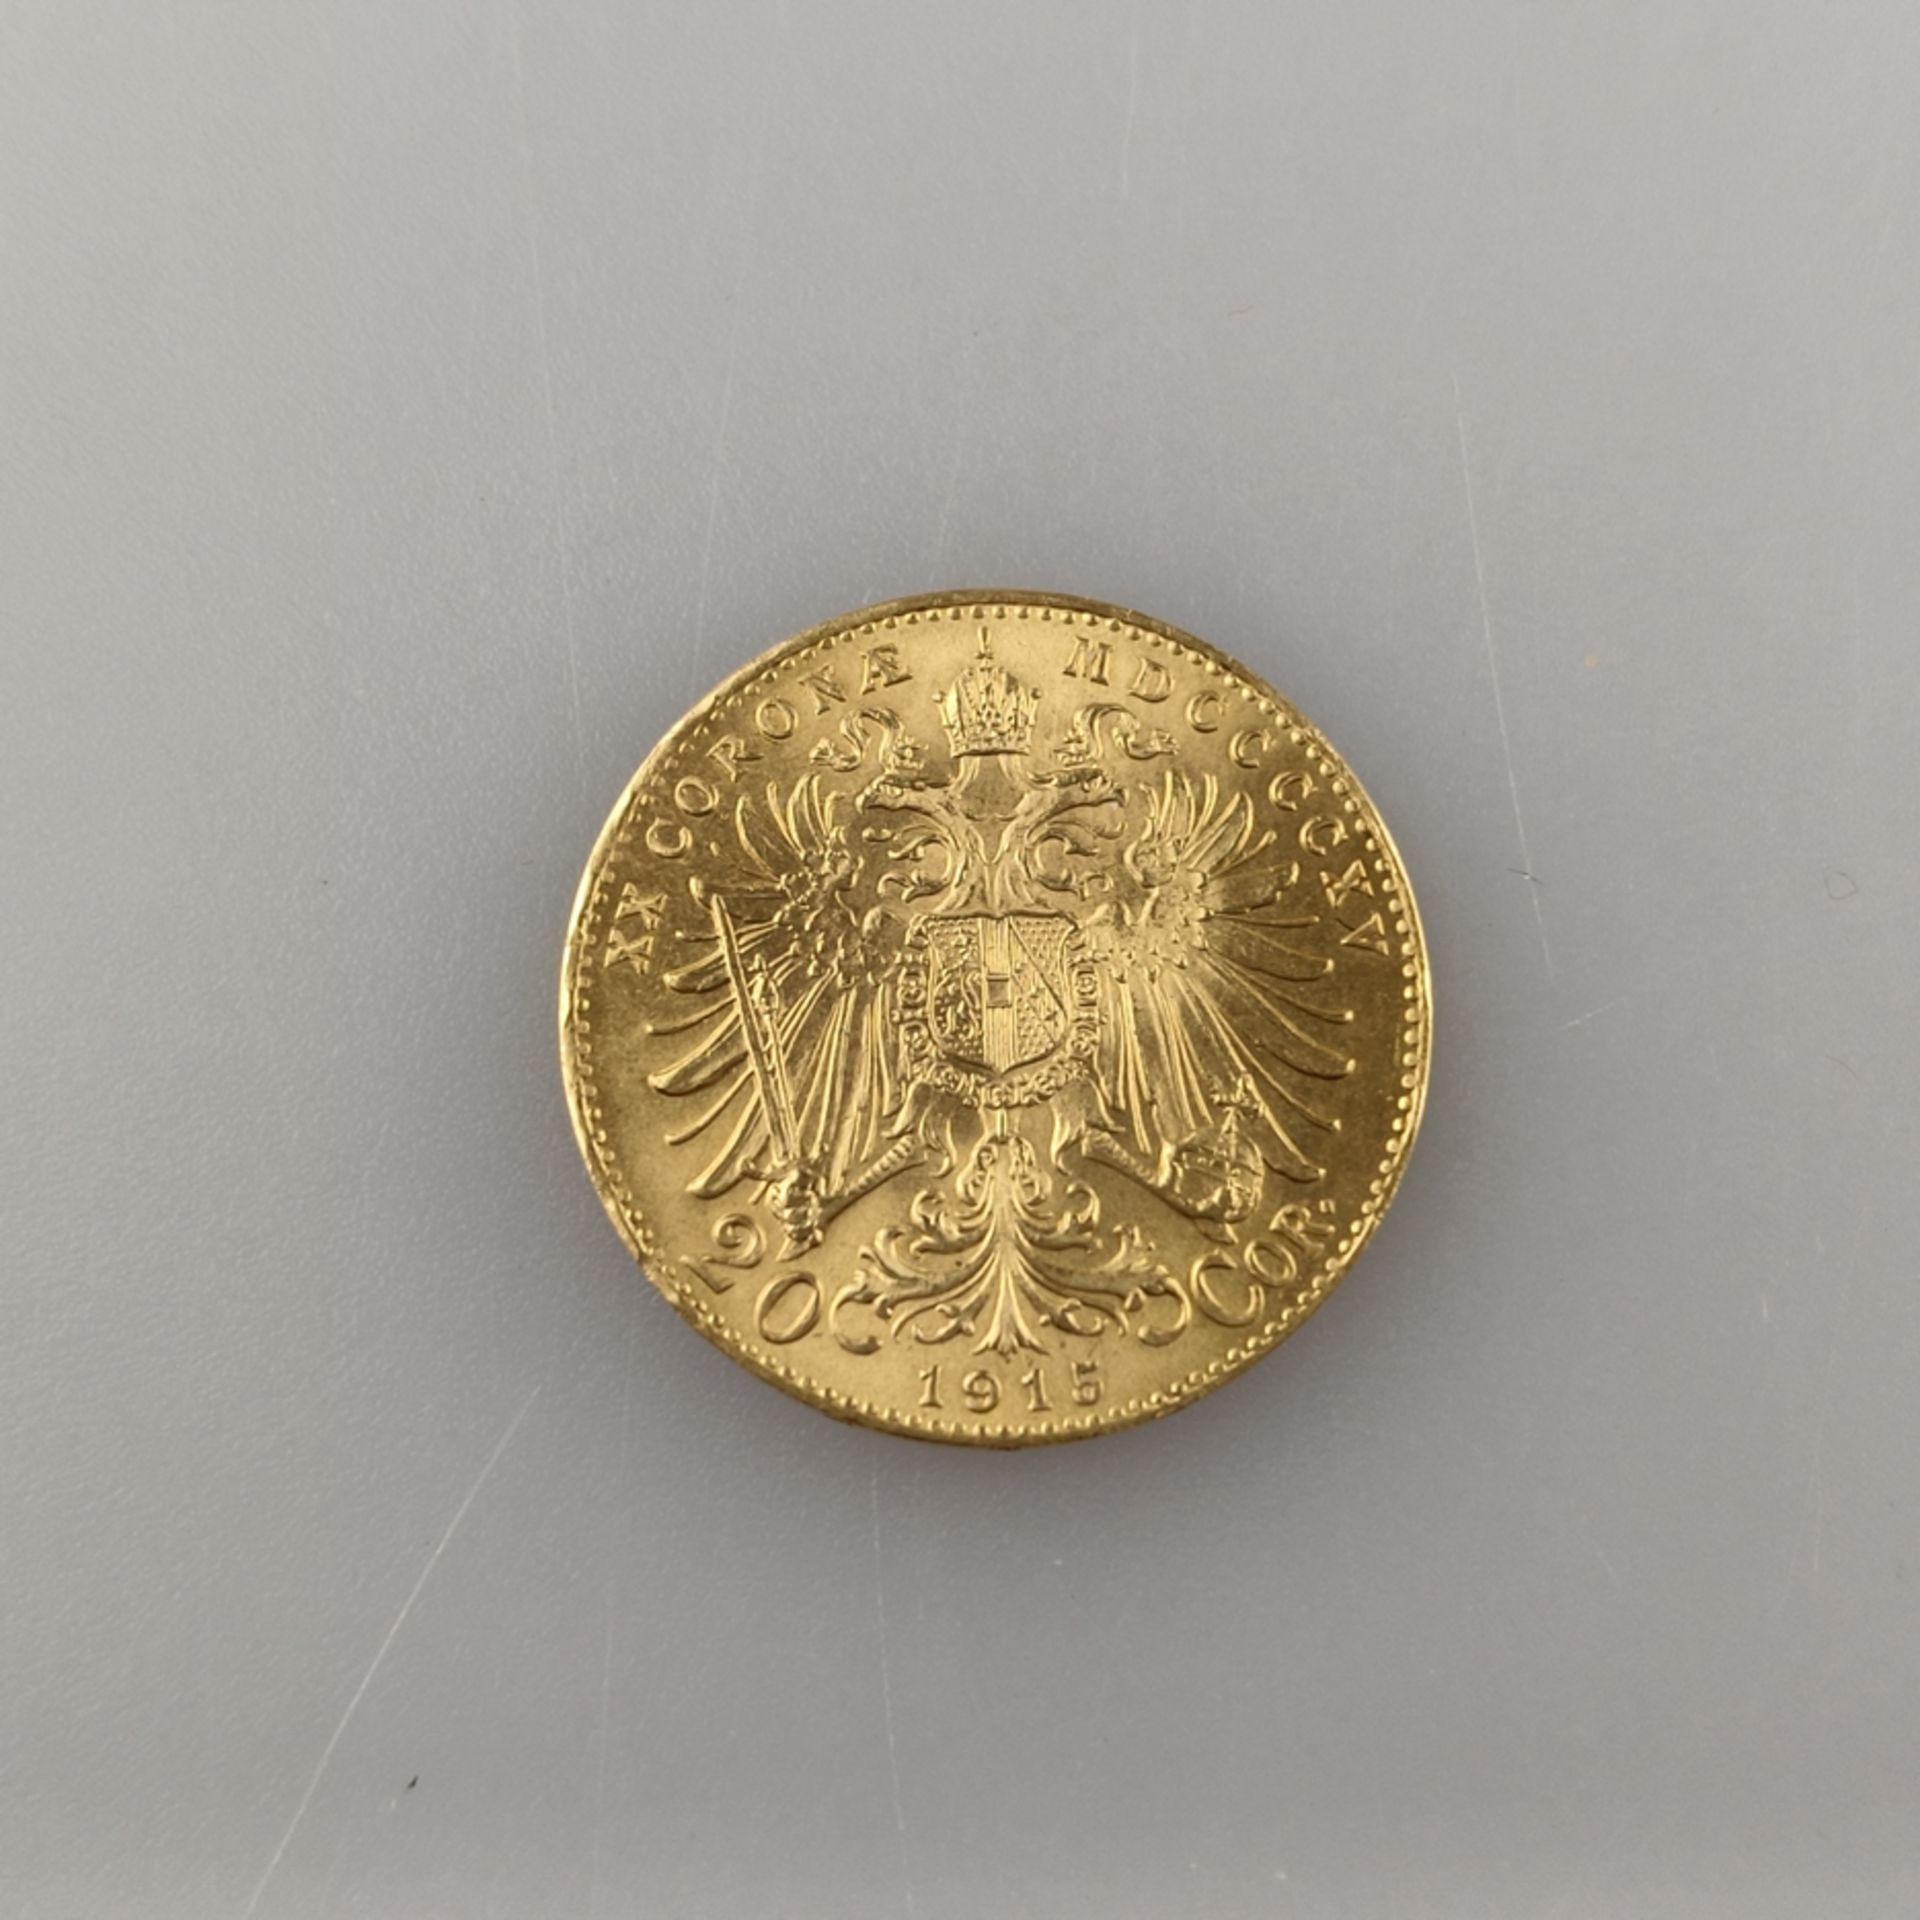 Goldmünze 20 Goldkronen 1915 - Österreich, Kaiser Franz Joseph I, Revers: österreichischer Wappenad - Image 2 of 3